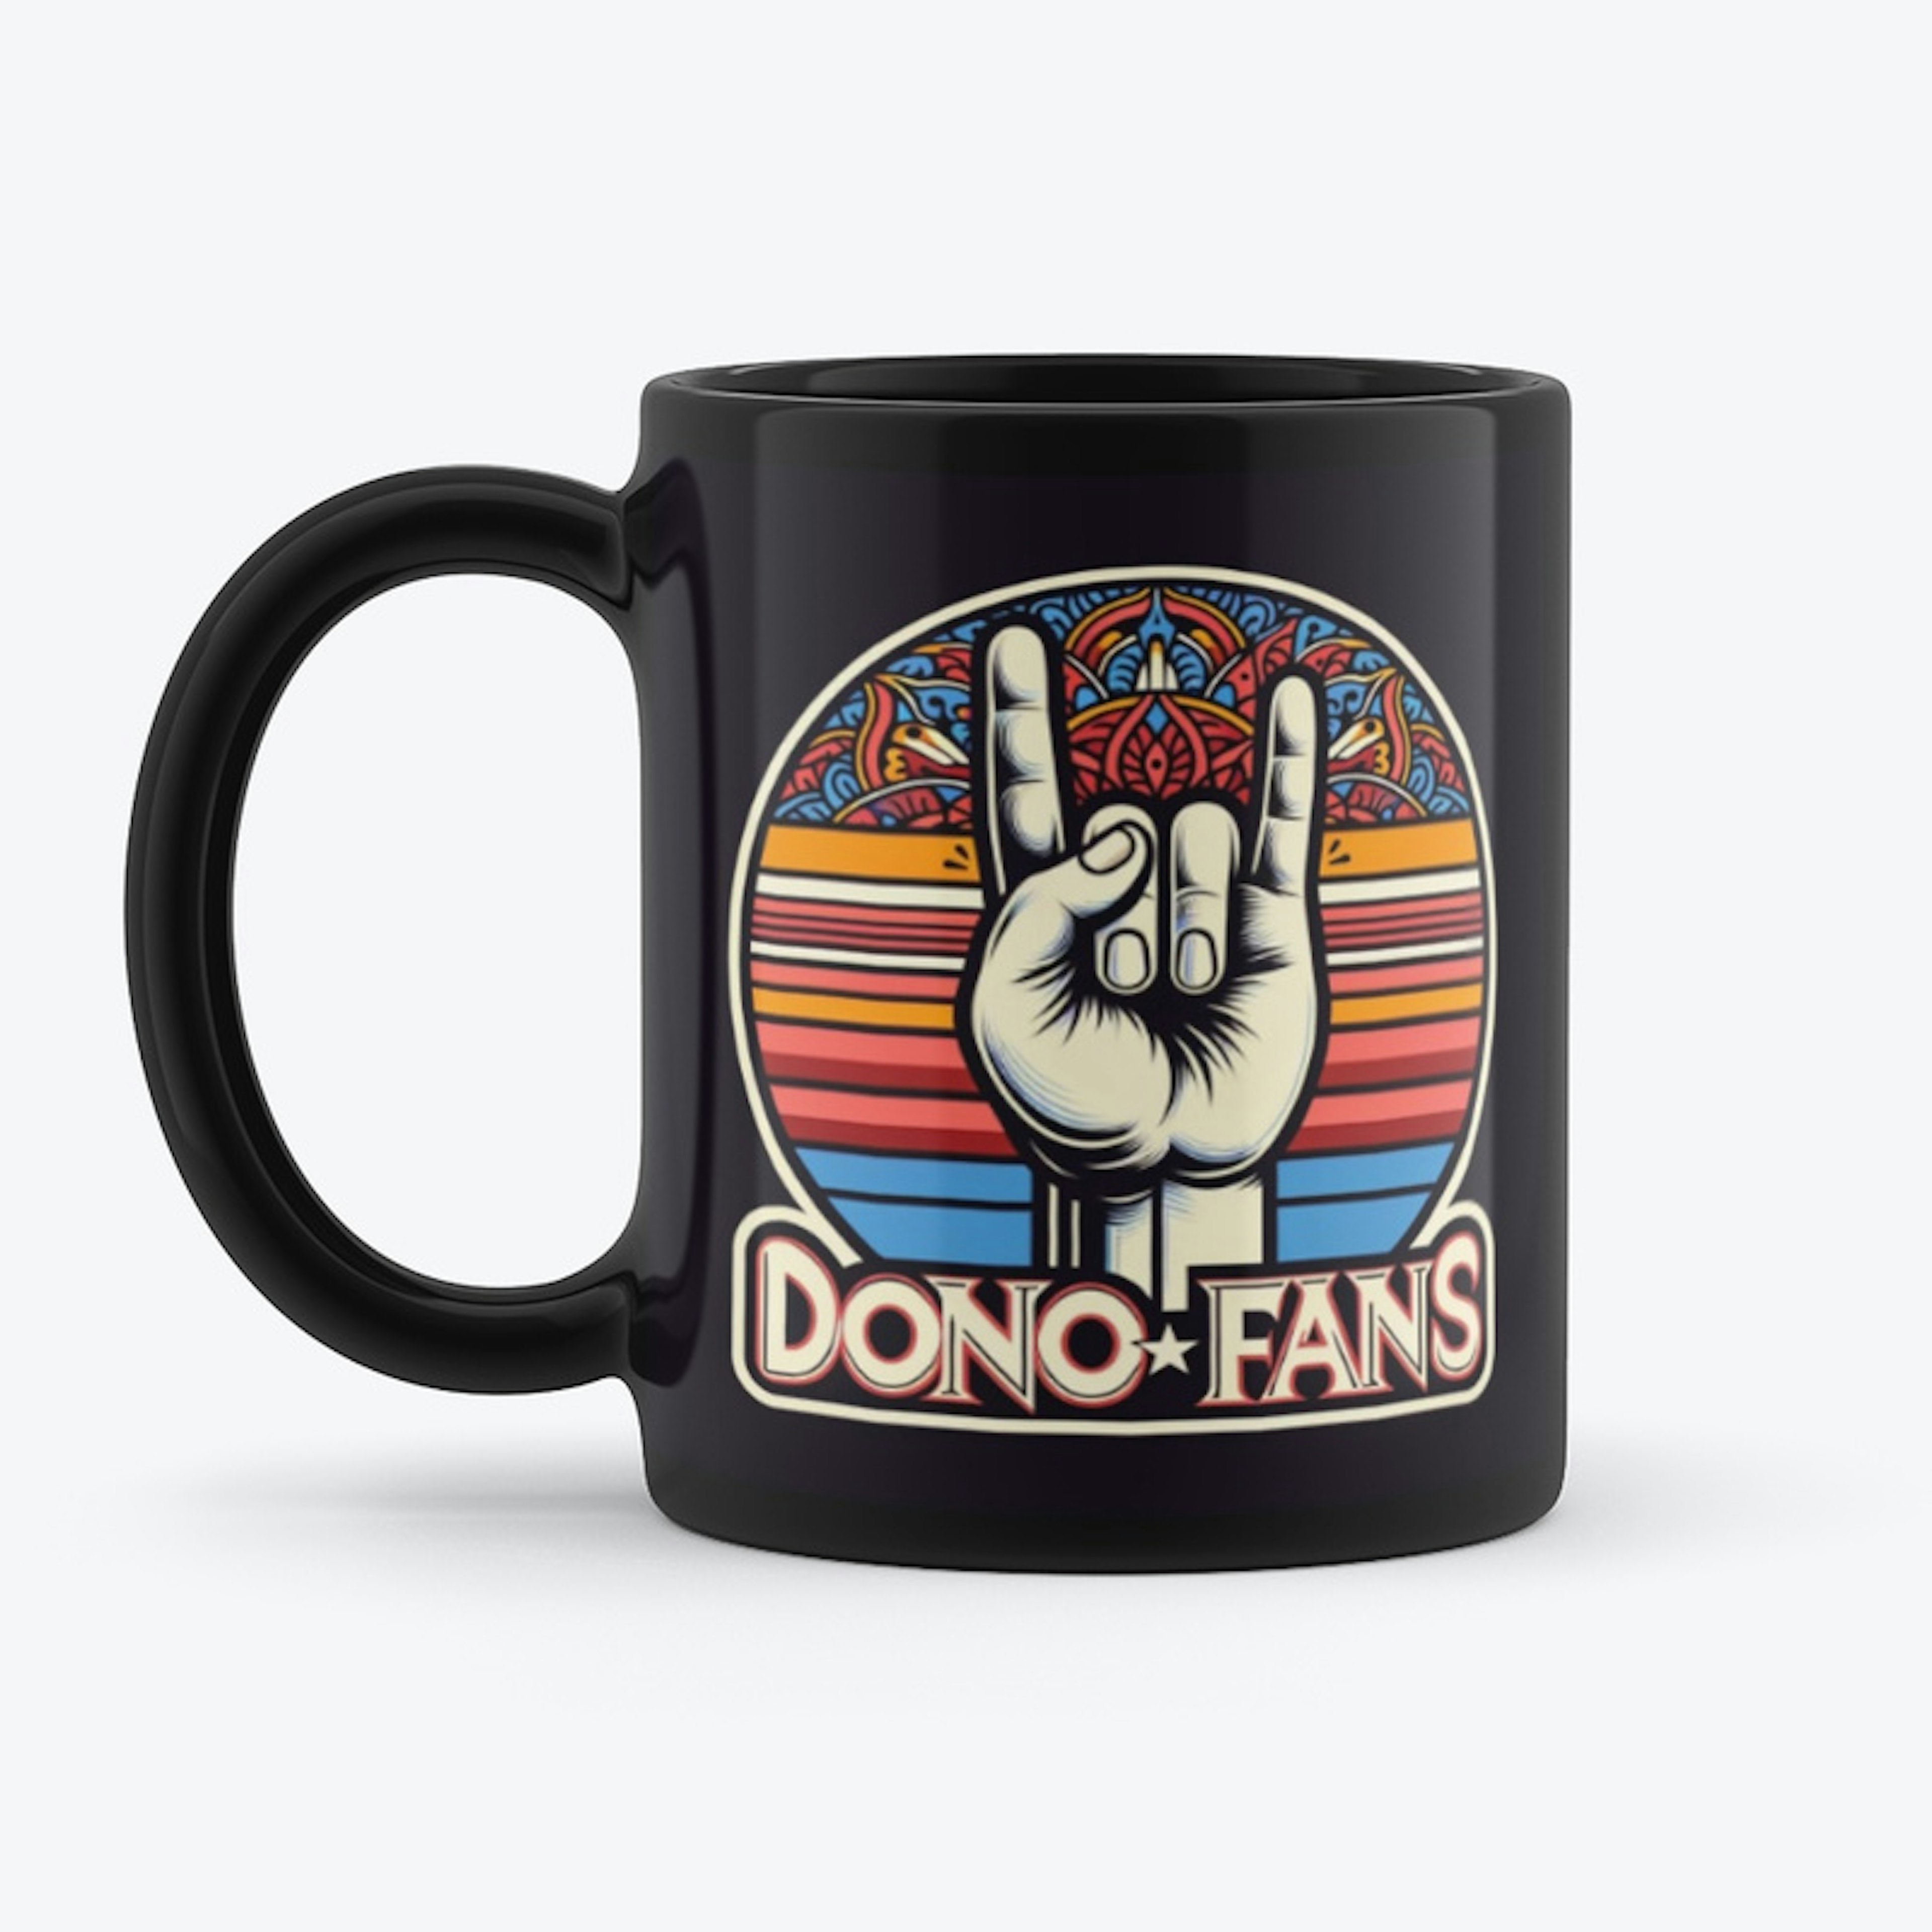 DonoFans 76 Chug Mug!